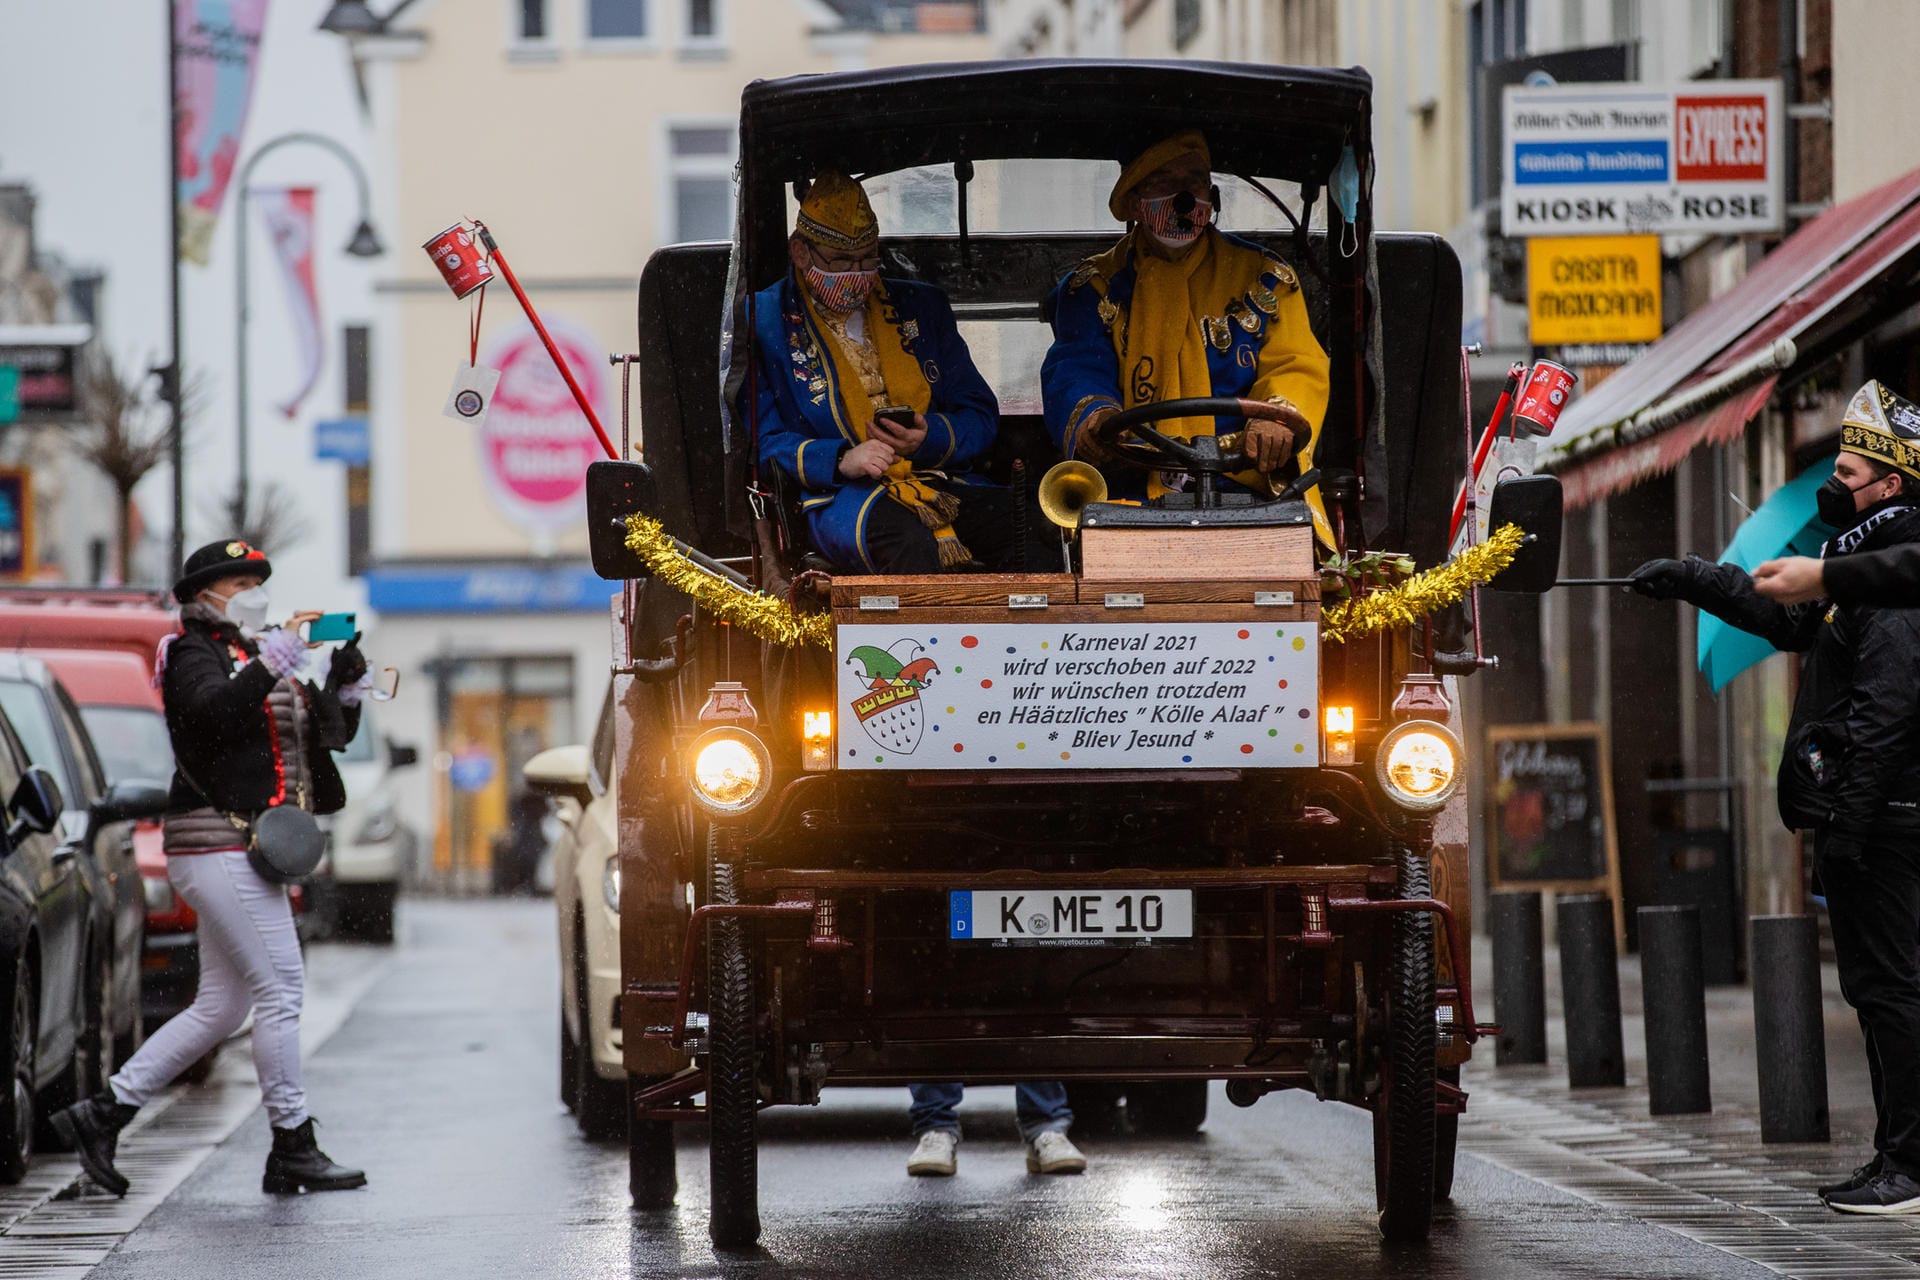 Karnevalisten fahren mit einem historischen Fahrzeug auf der Severinstraße. Darauf ist die Aufschrift zu lesen: "Karneval 2021 – wird verschoben auf 2022 – wir wünschen trotzdem en Häätzliches Kölle Alaaf - Bliev Jesund".